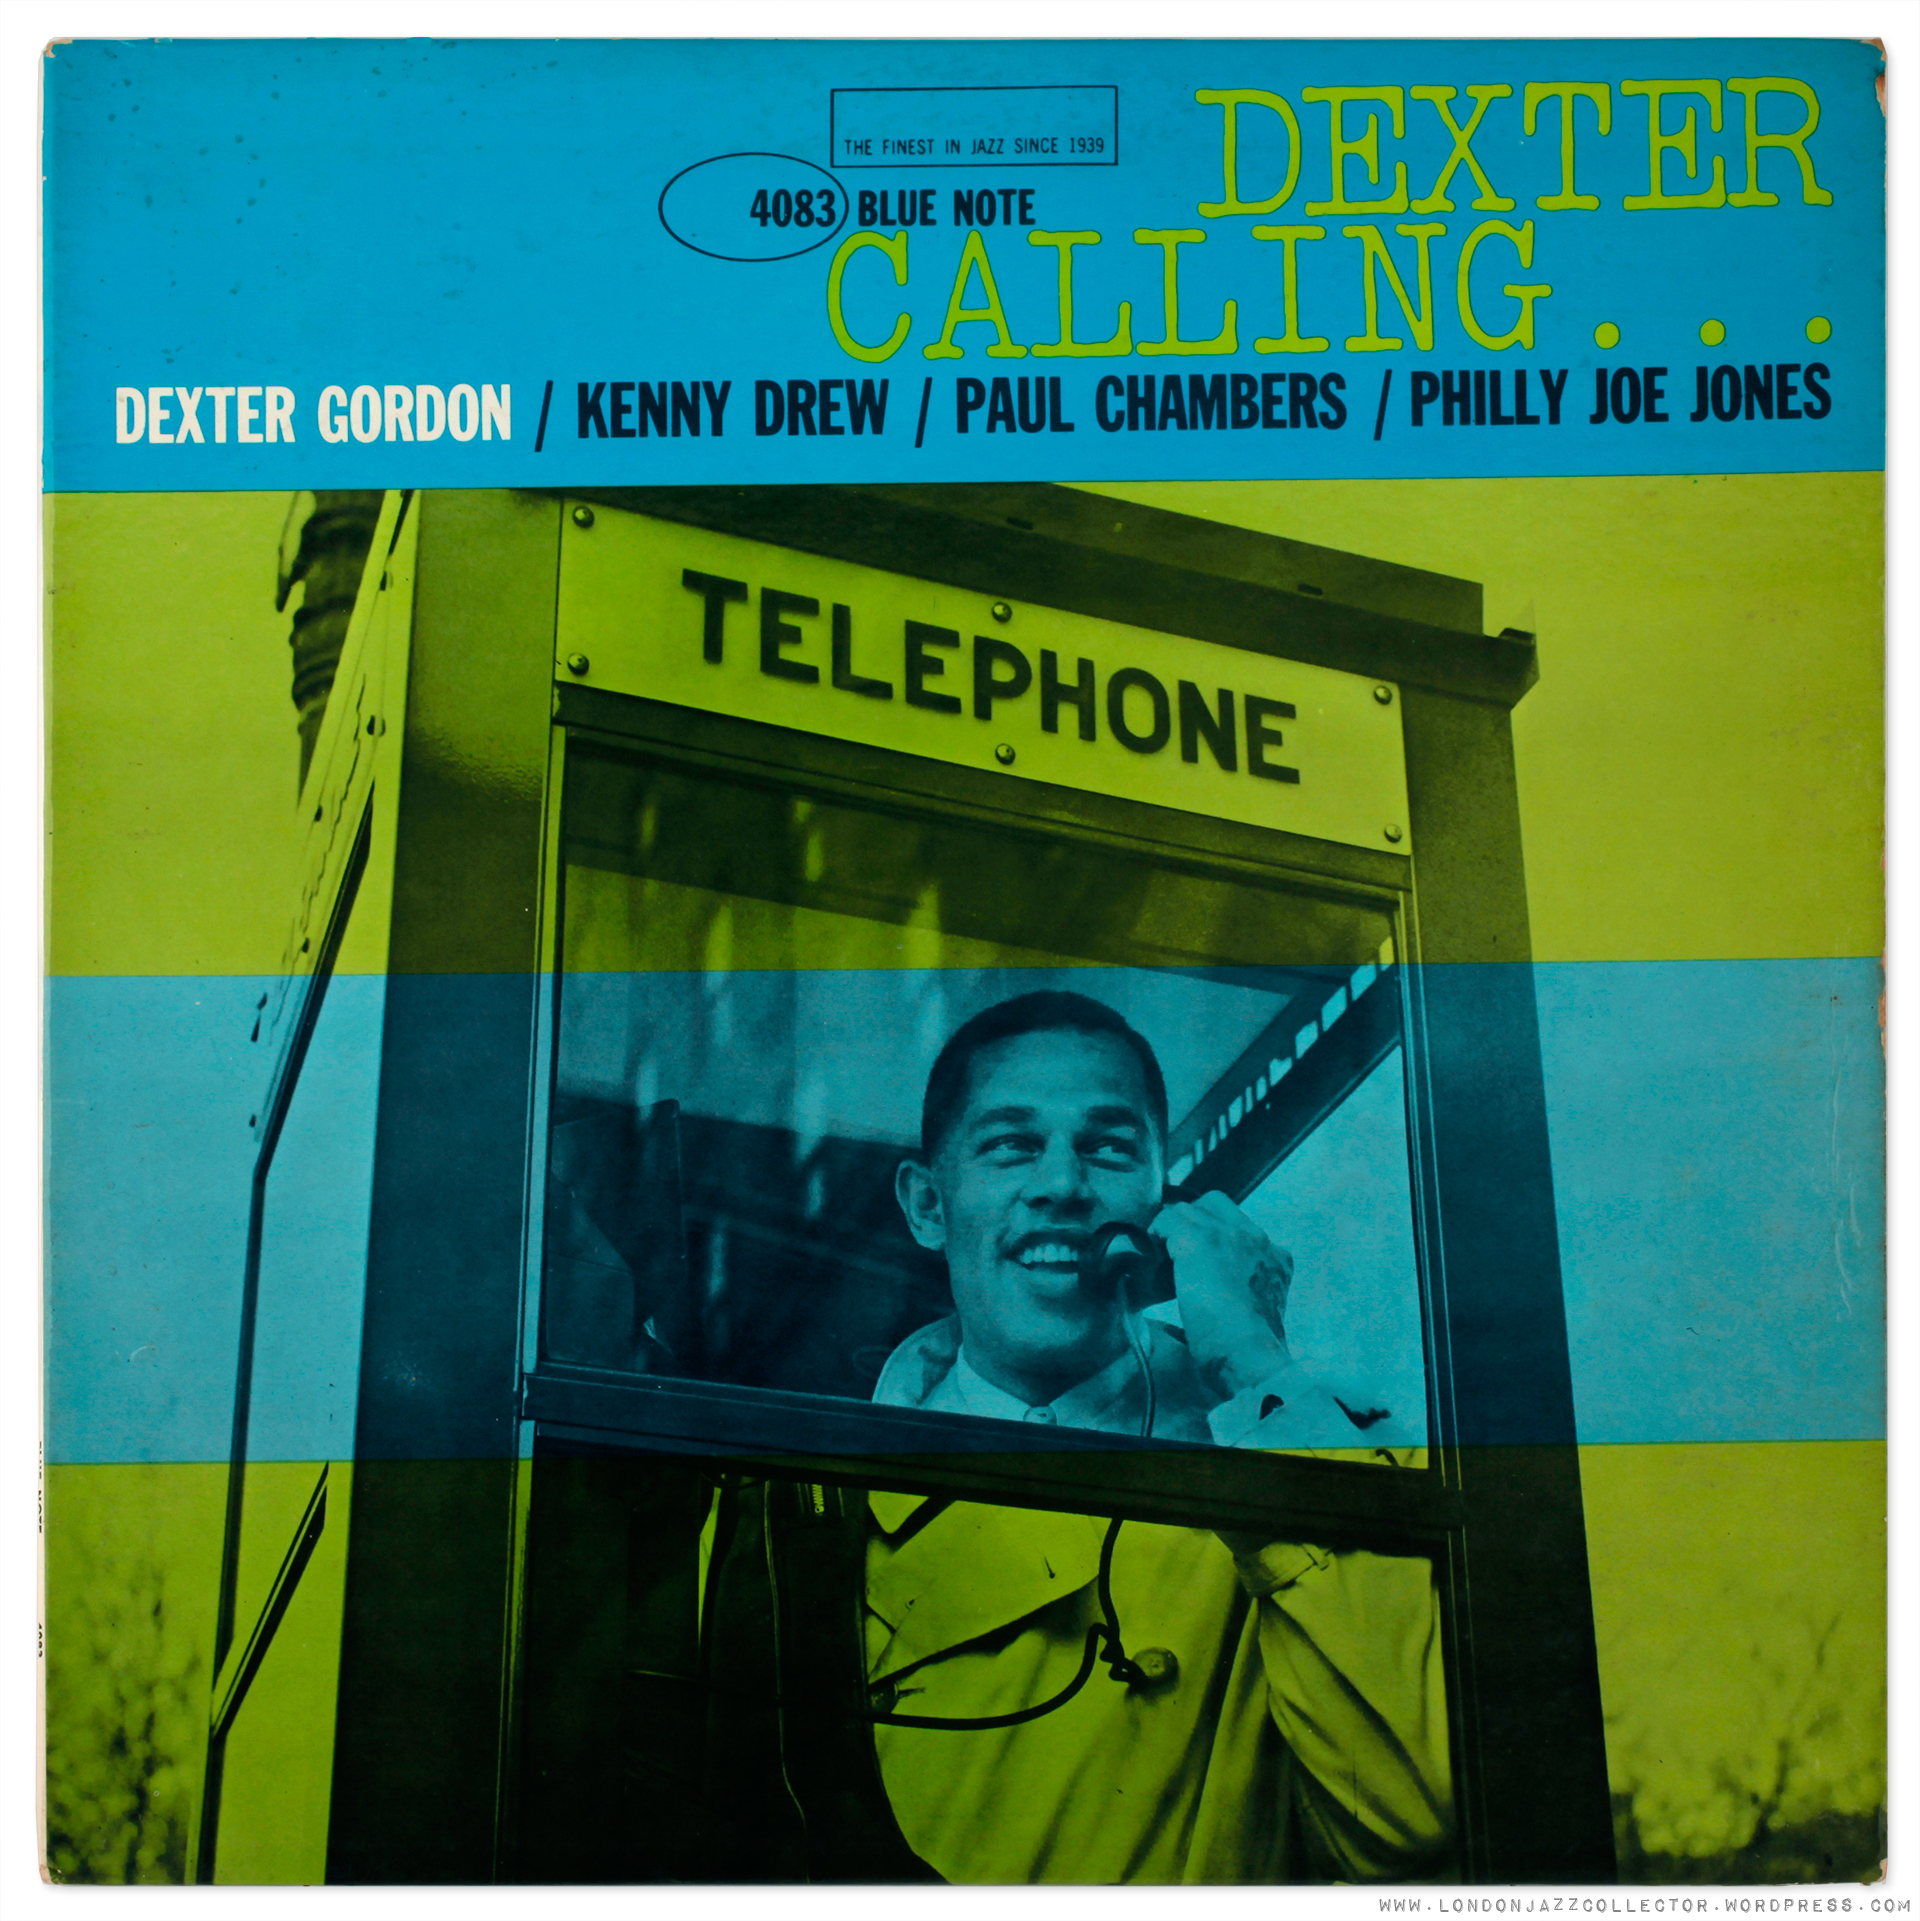 dexter-gordon-blp-4083-dexter-calling-cover-1920-ljc.jpg